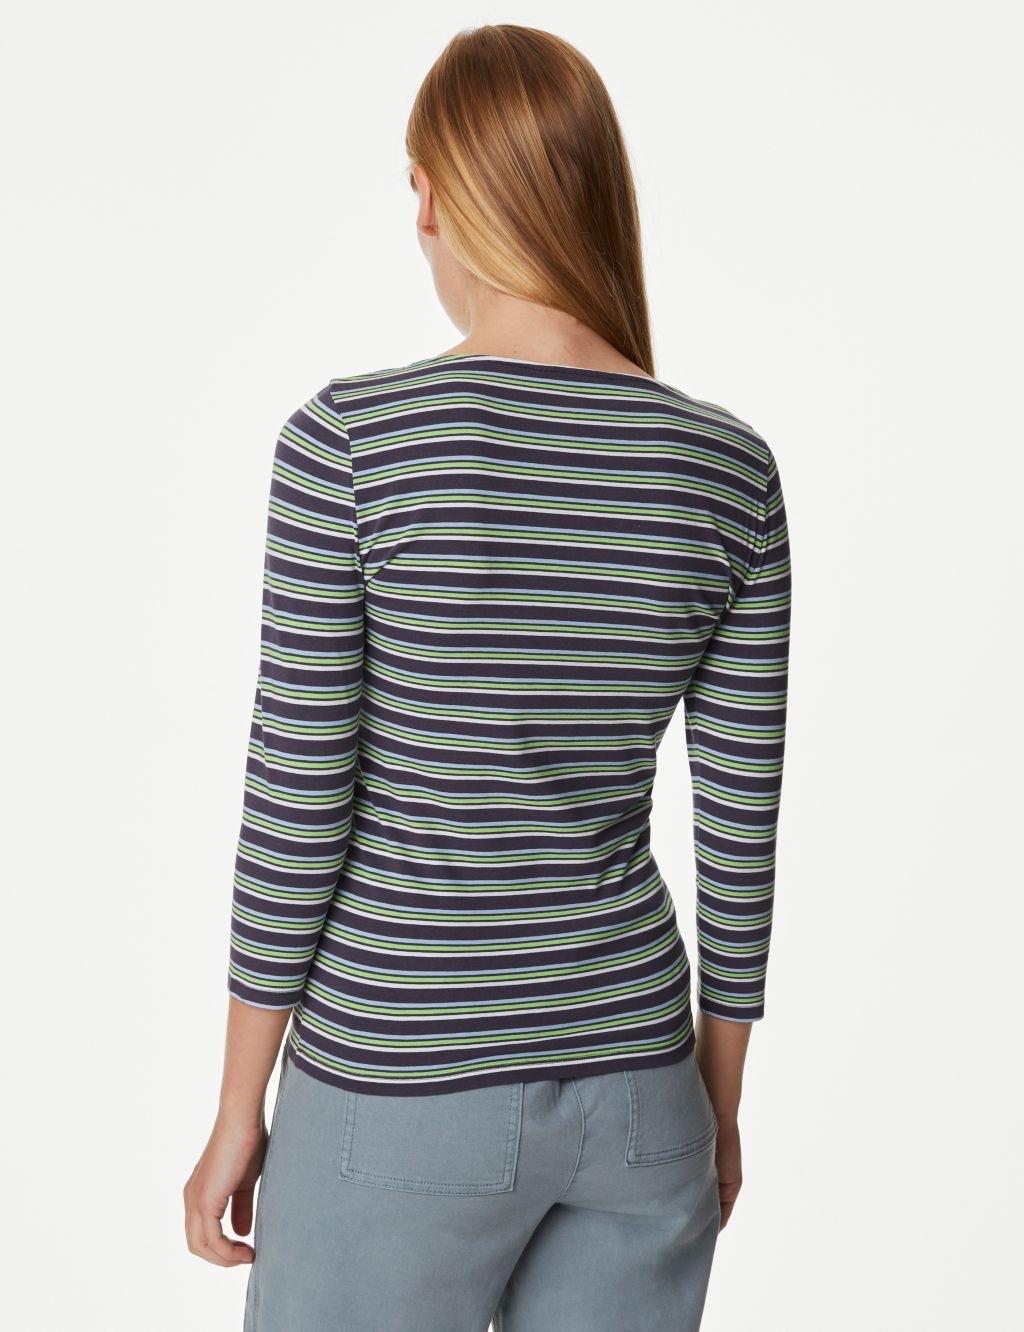 Cotton Rich Striped Slim Fit T-Shirt image 4